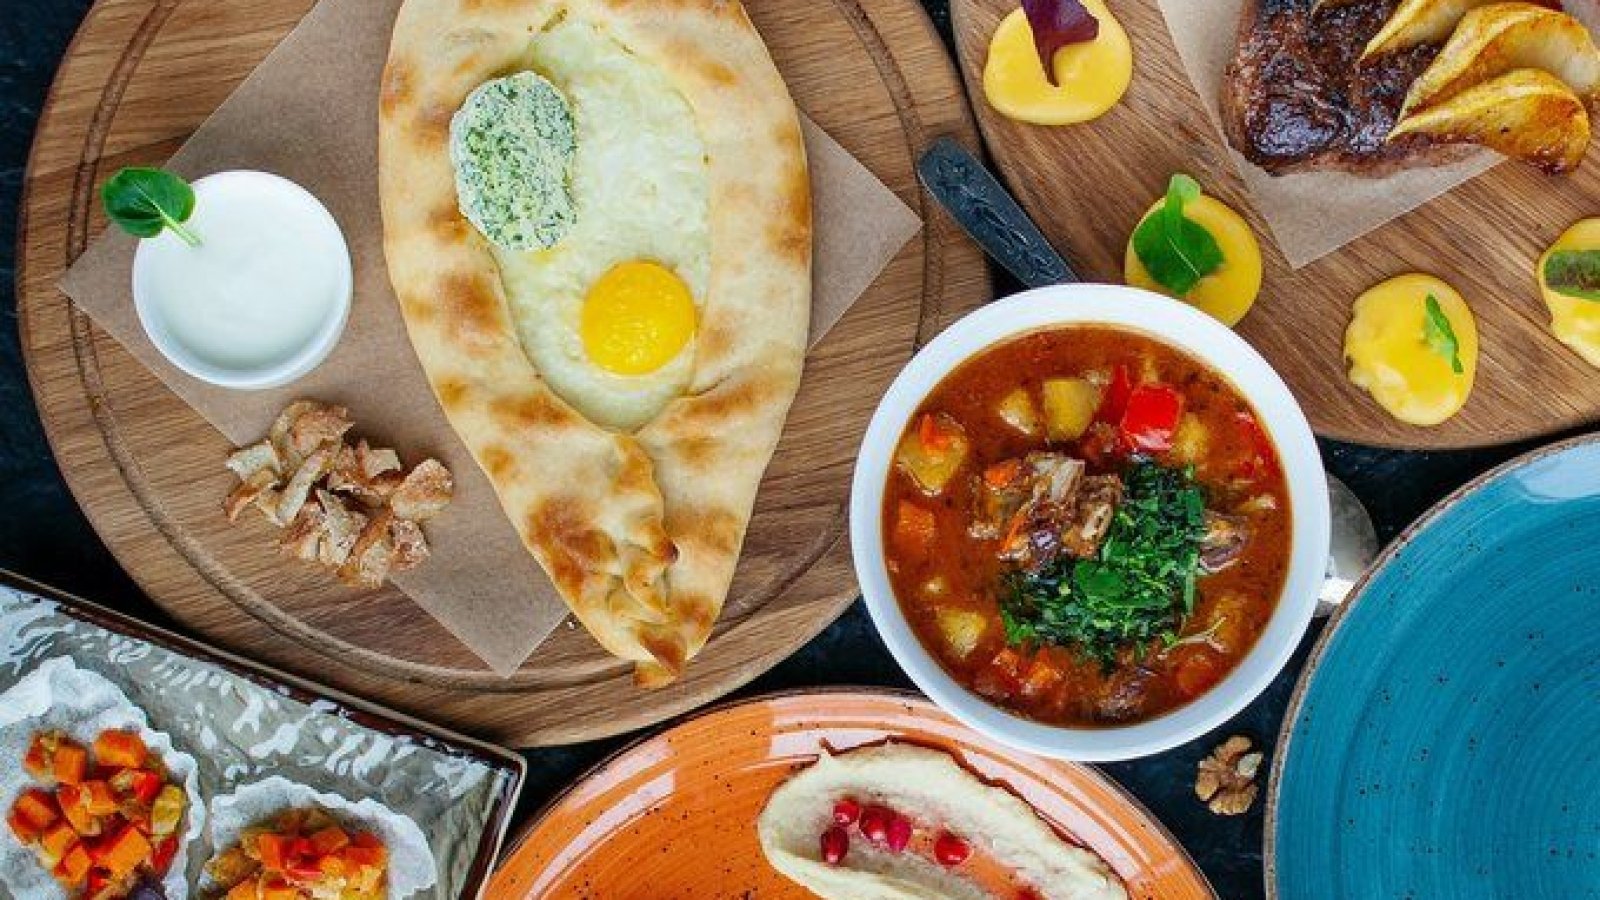 ТОП-10 блюд грузинской кухни для большого семейного застолья: самые вкусные и популярные грузинские рецепты